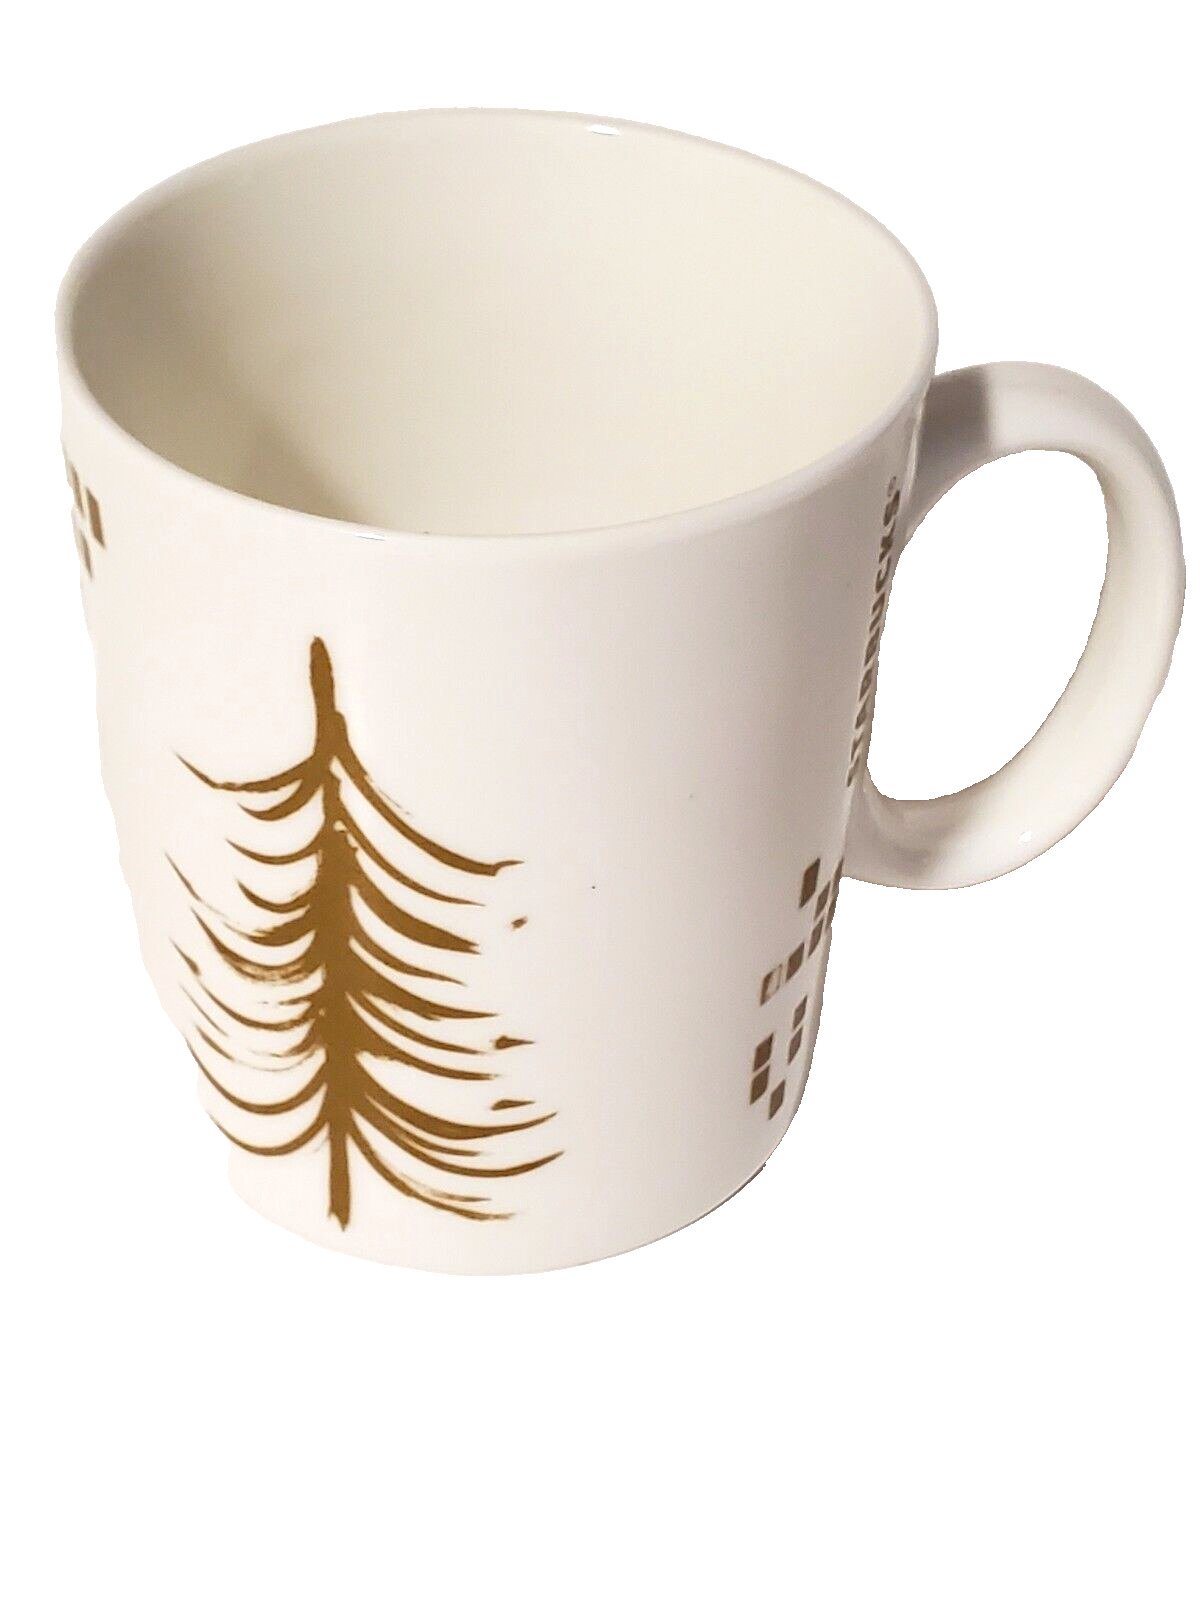 Starbucks Holiday Gold Christmas Tree Coffee Mug 12oz 2014 Collection